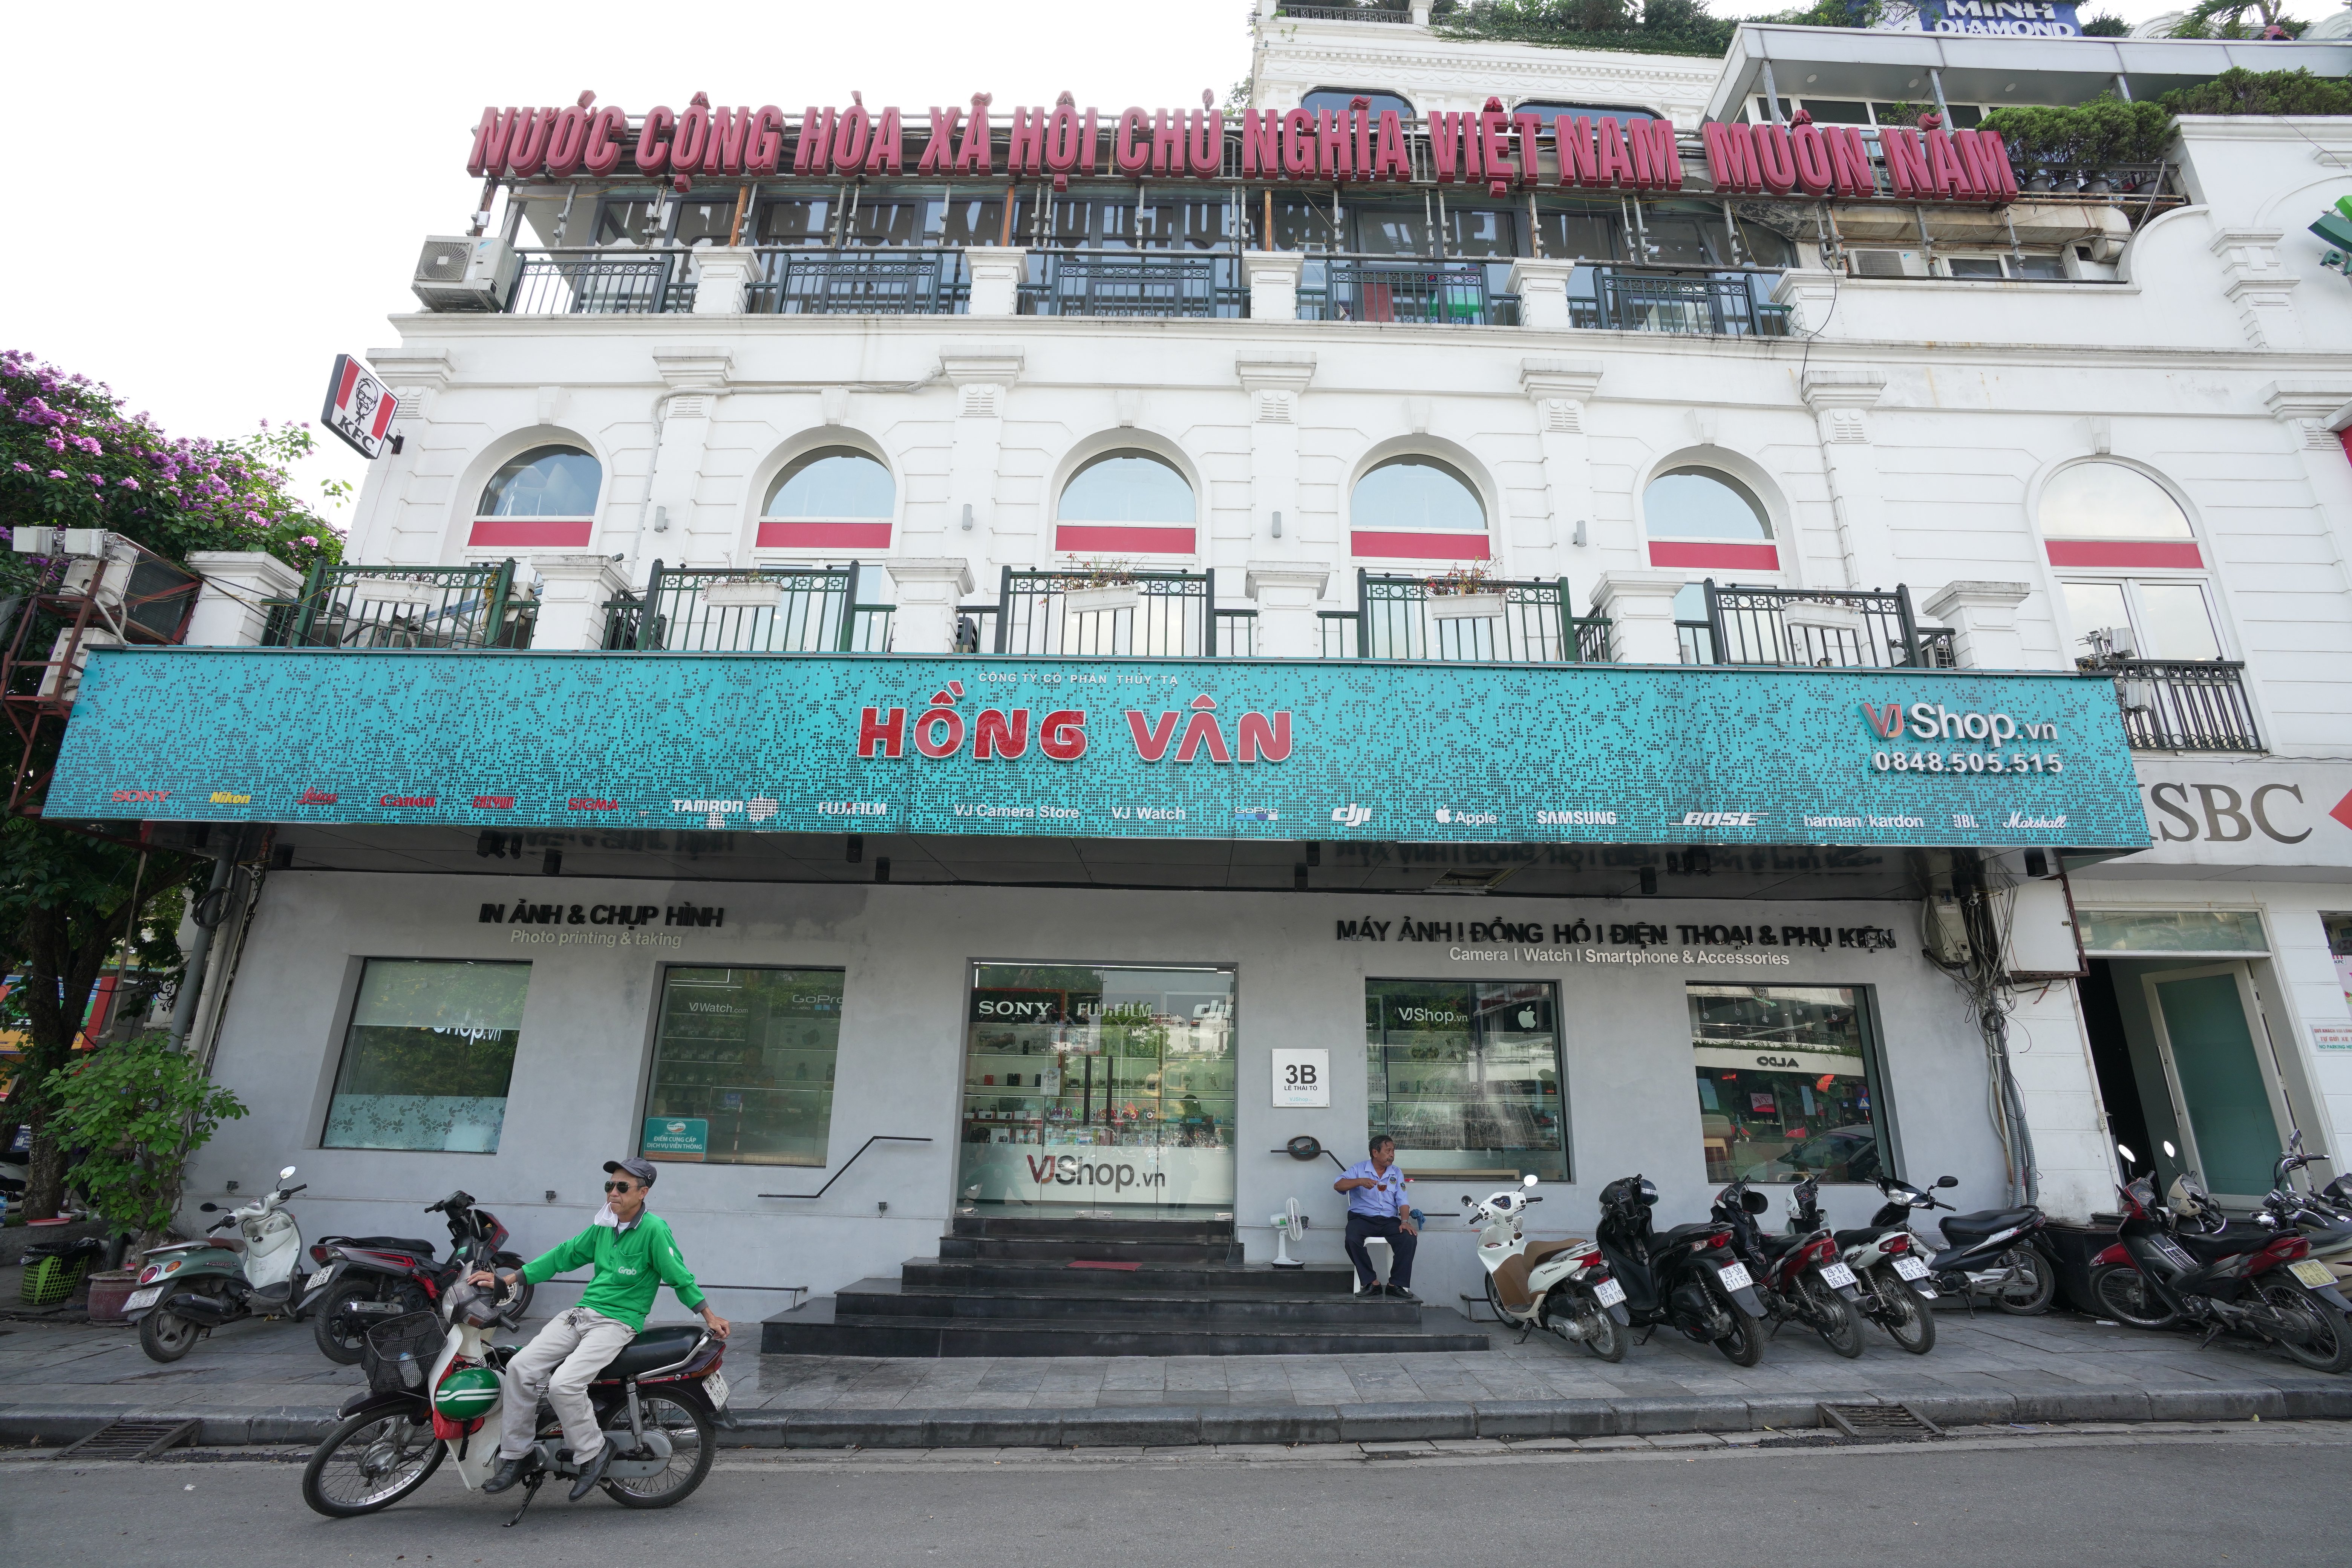 mua máy ảnh giá rẻ ở hà nội tại cơ sở VJSHOP - 3B Lê Thái Tổ, Q.Hoàn Kiếm, Hà Nội